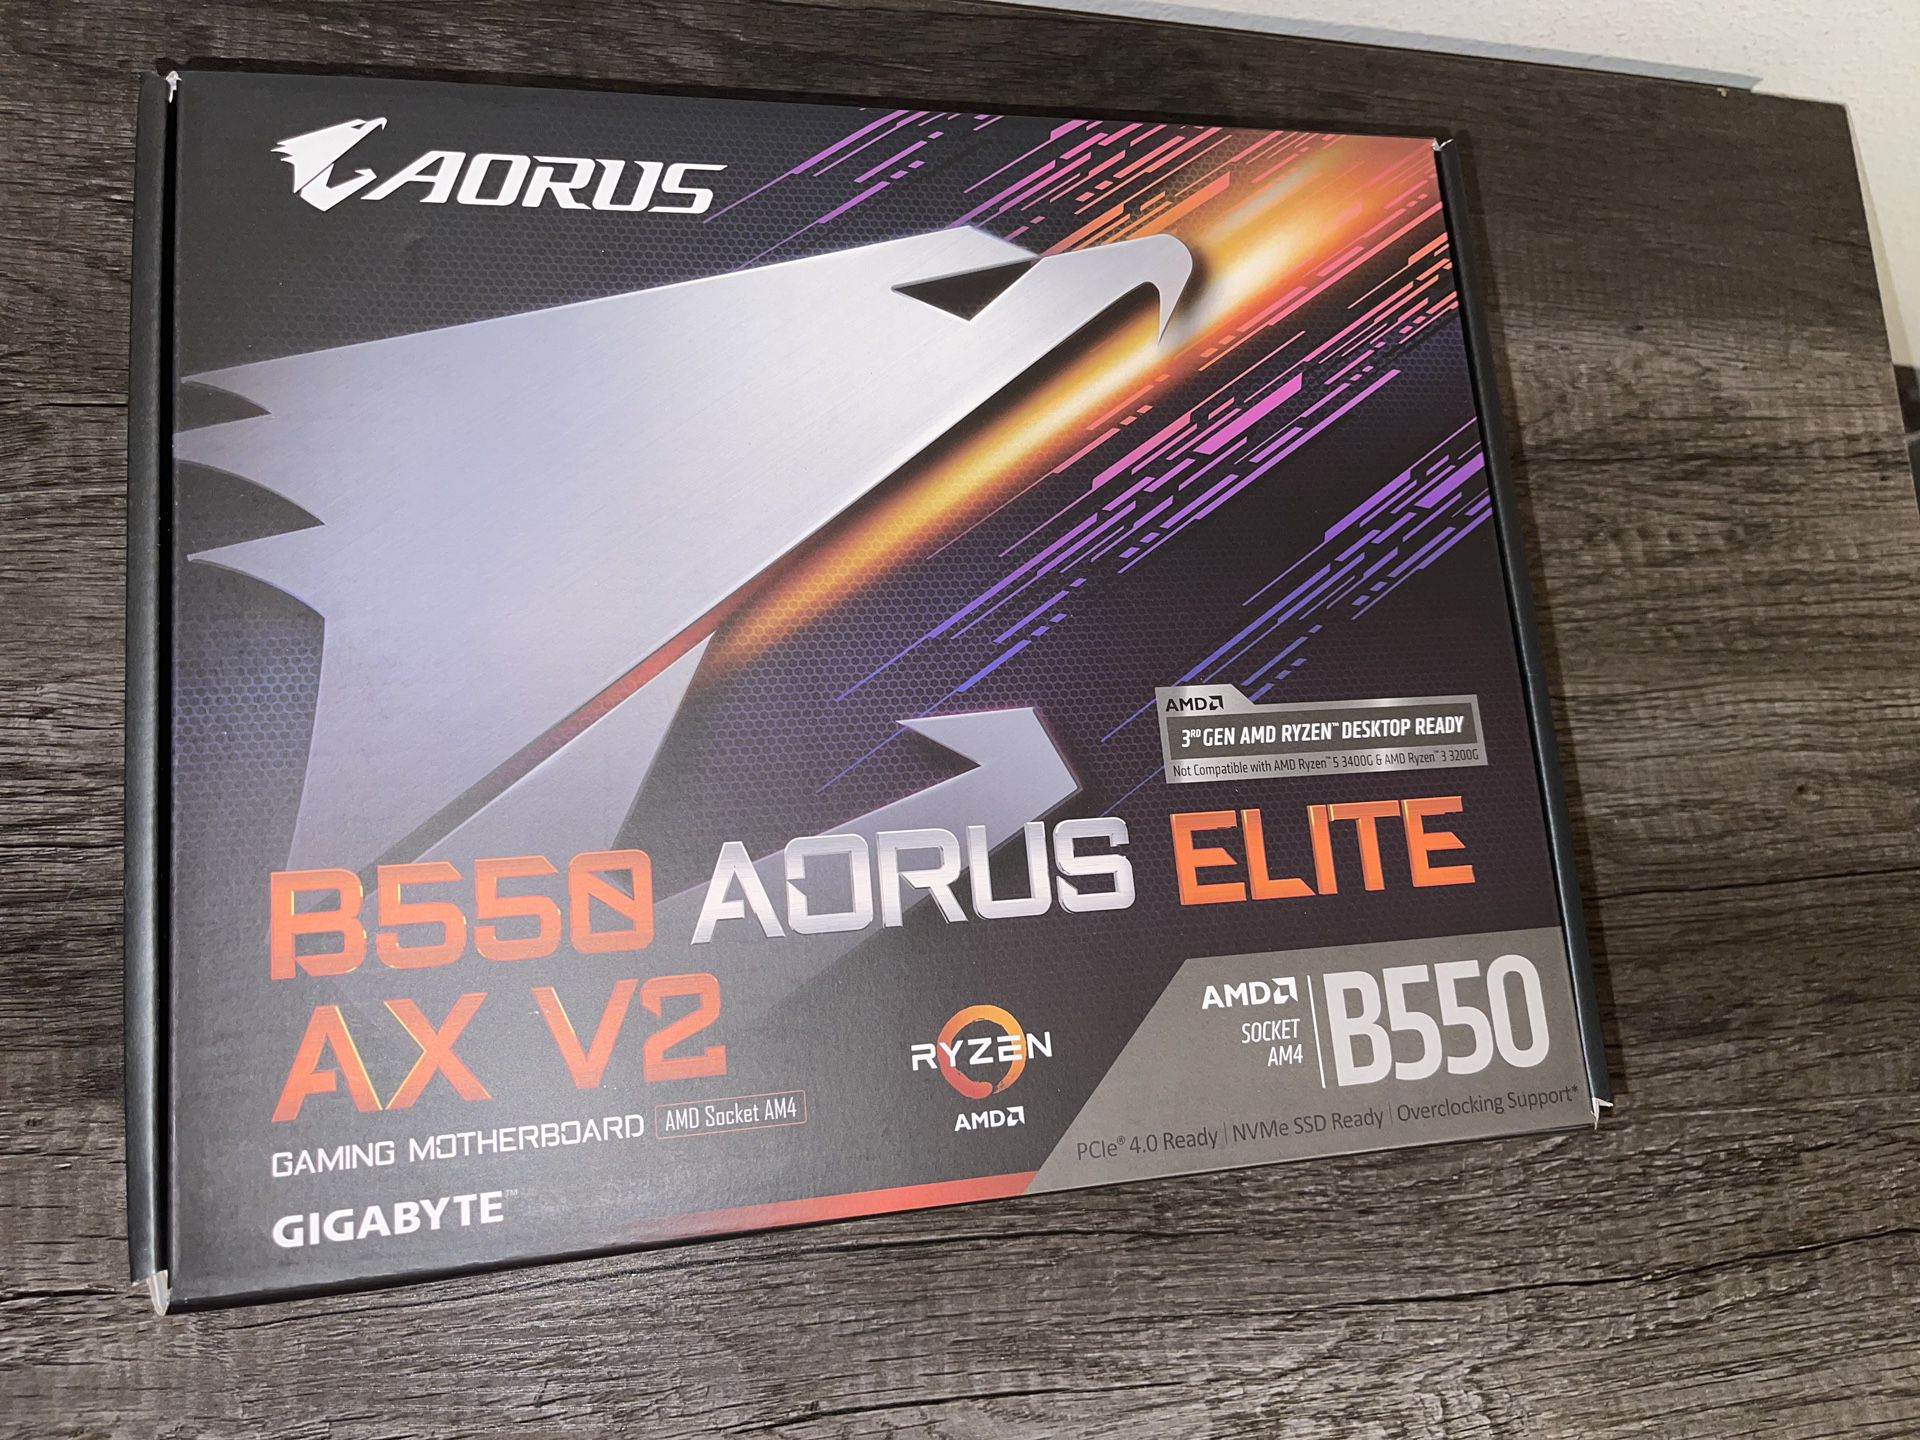 B550 Aorus elite AX V2 NEW